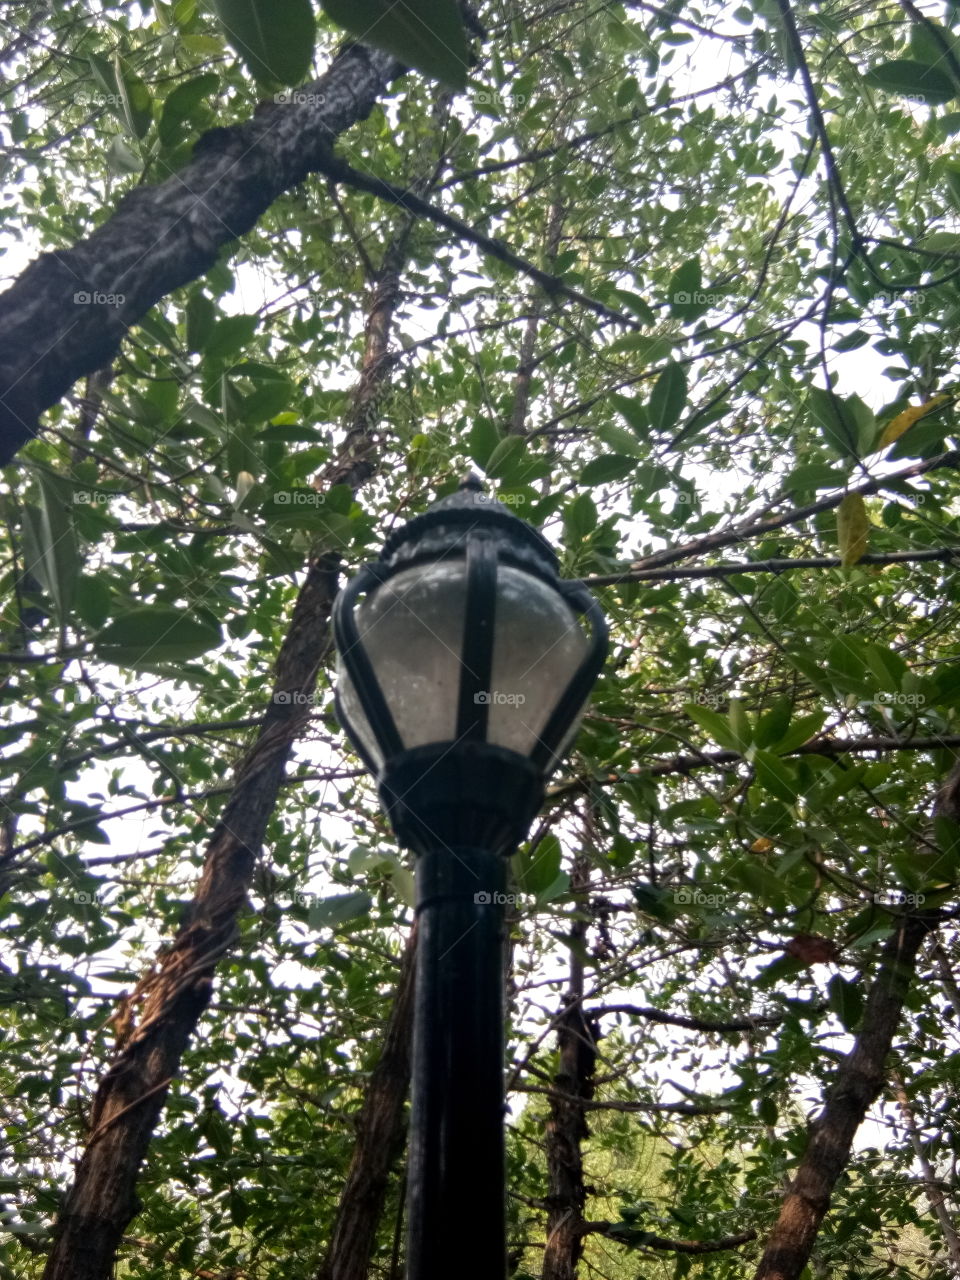 art
lamp 
tree